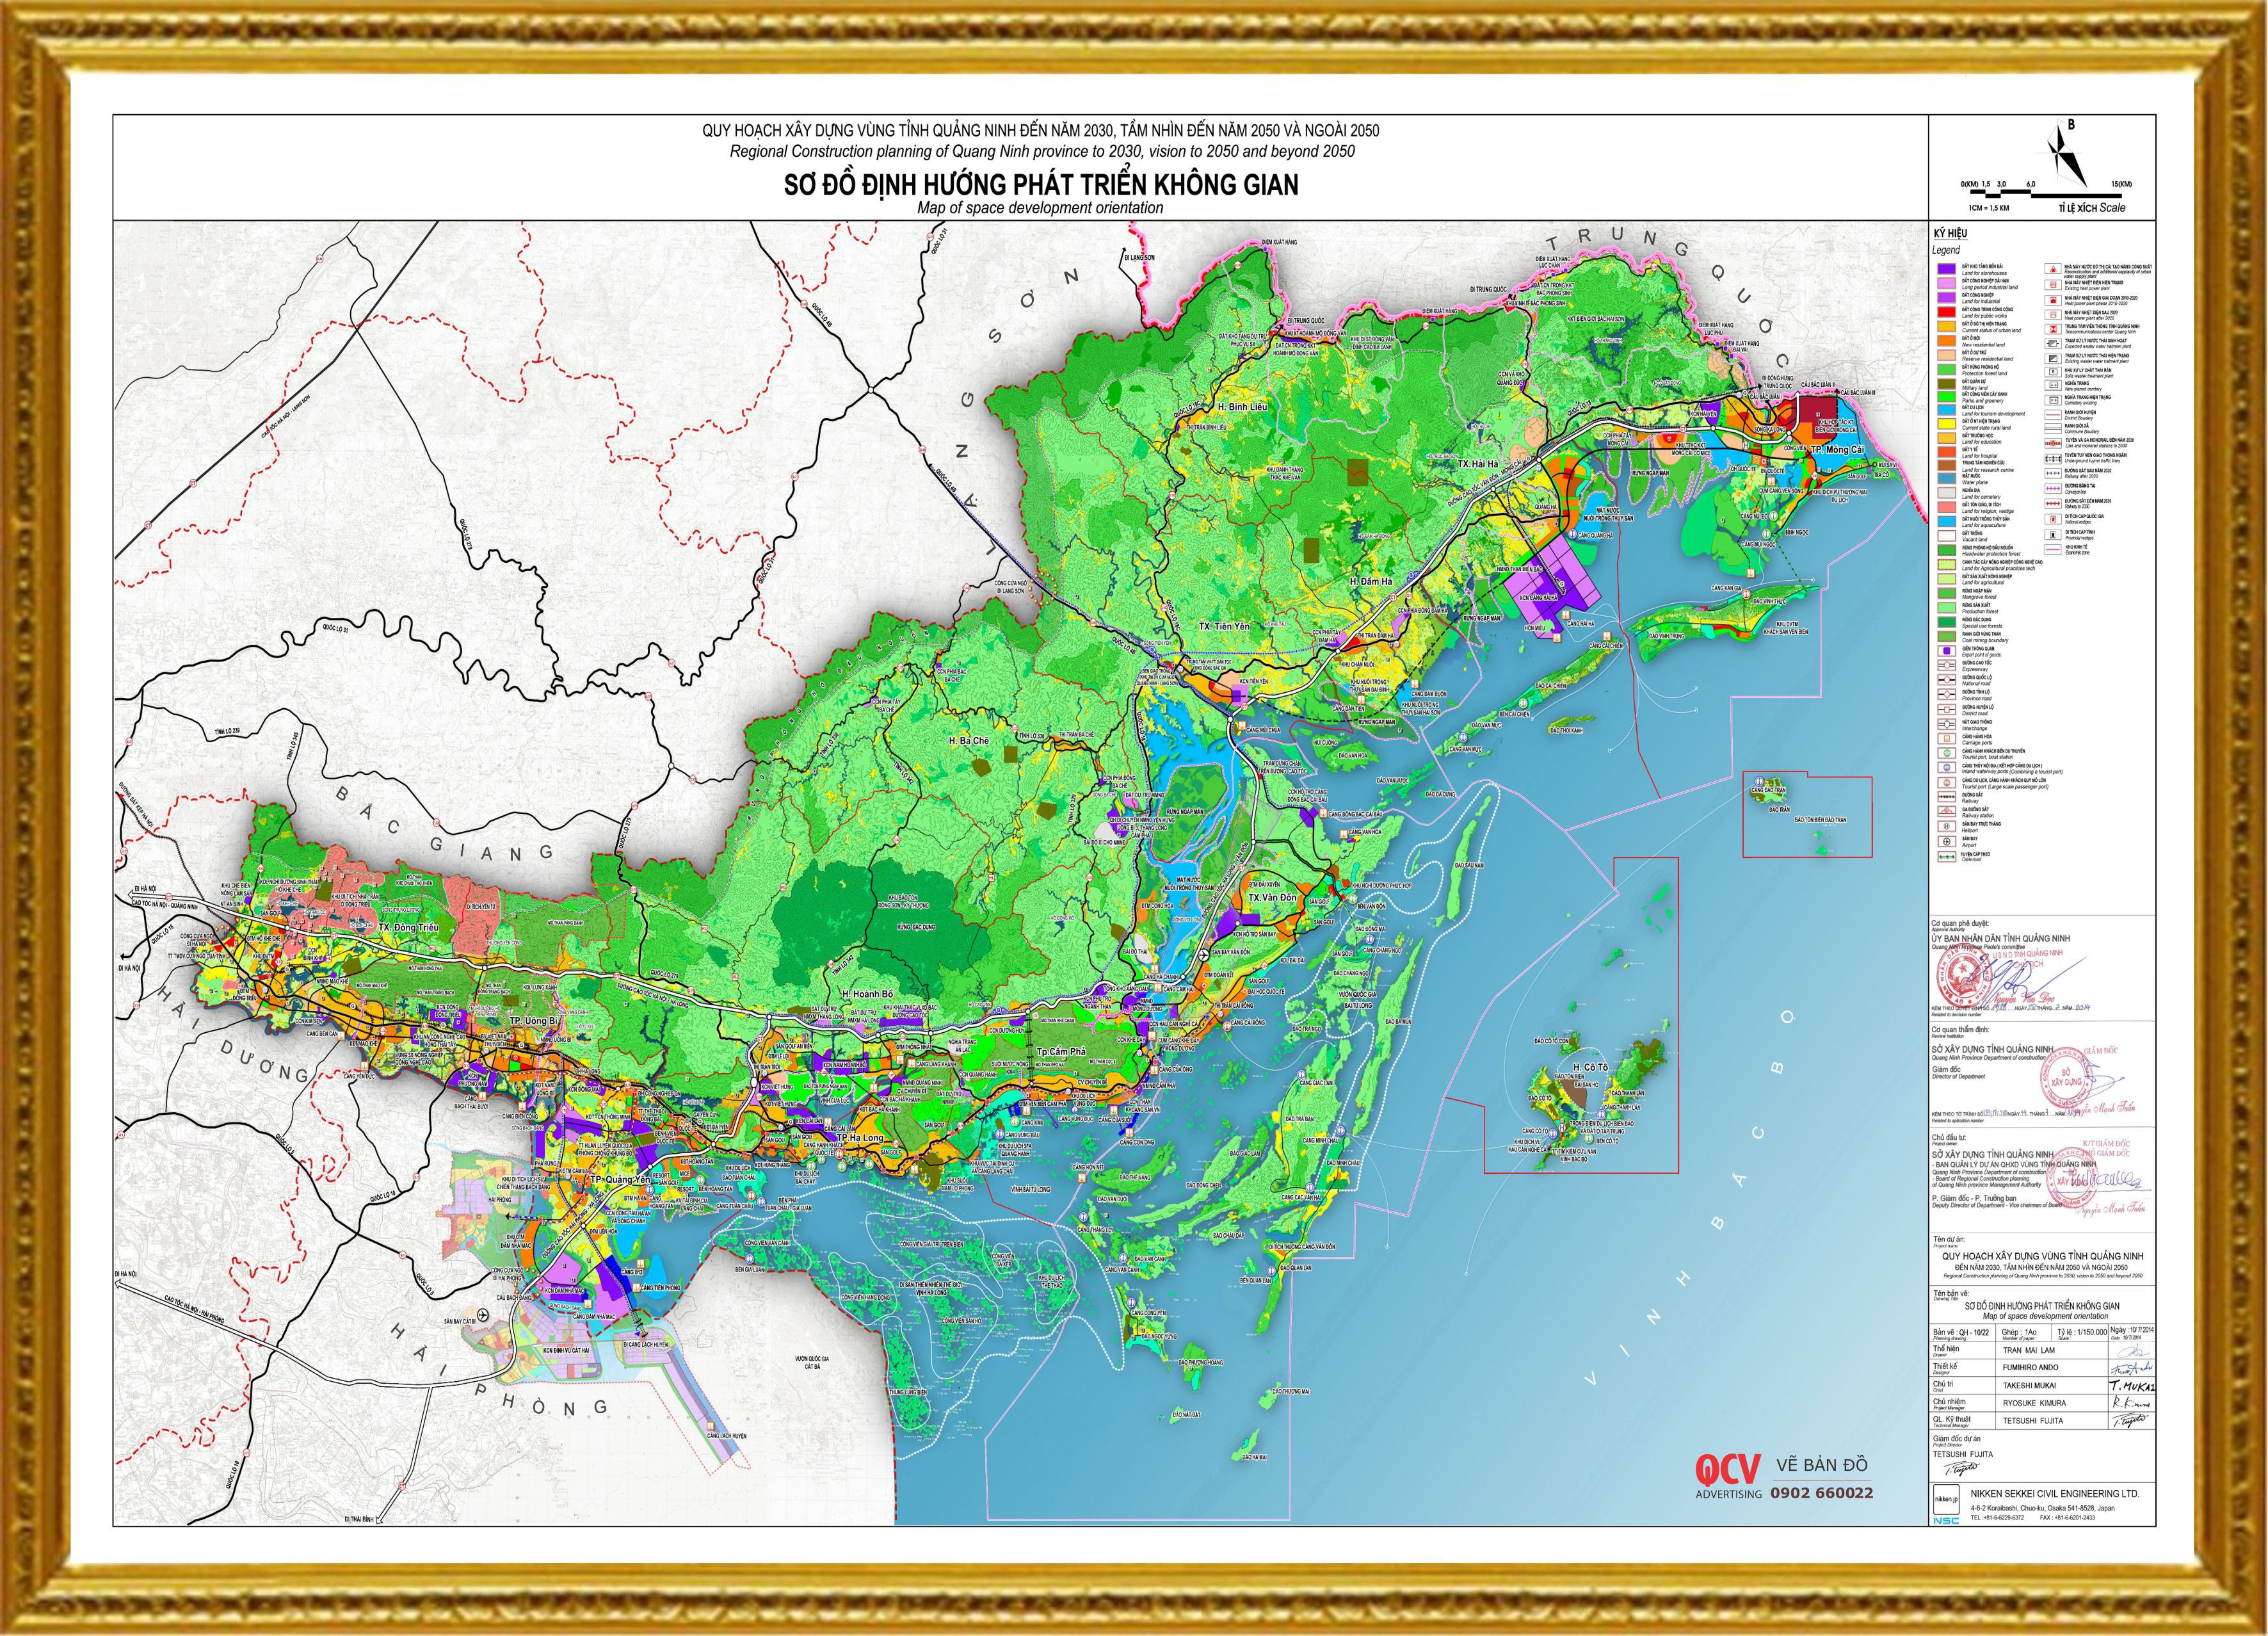 Bản đồ hành chính của Quảng Ninh năm 2024 đã được cập nhật mới nhất, với thông tin đầy đủ về các khu vực và địa danh. Các công việc chính phủ, hành chính điều hành của vùng đất này được thể hiện rõ ràng trên bản đồ, giúp bạn hiểu rõ hơn về tỉnh này và quản lý công việc của mình một cách chính xác hơn.